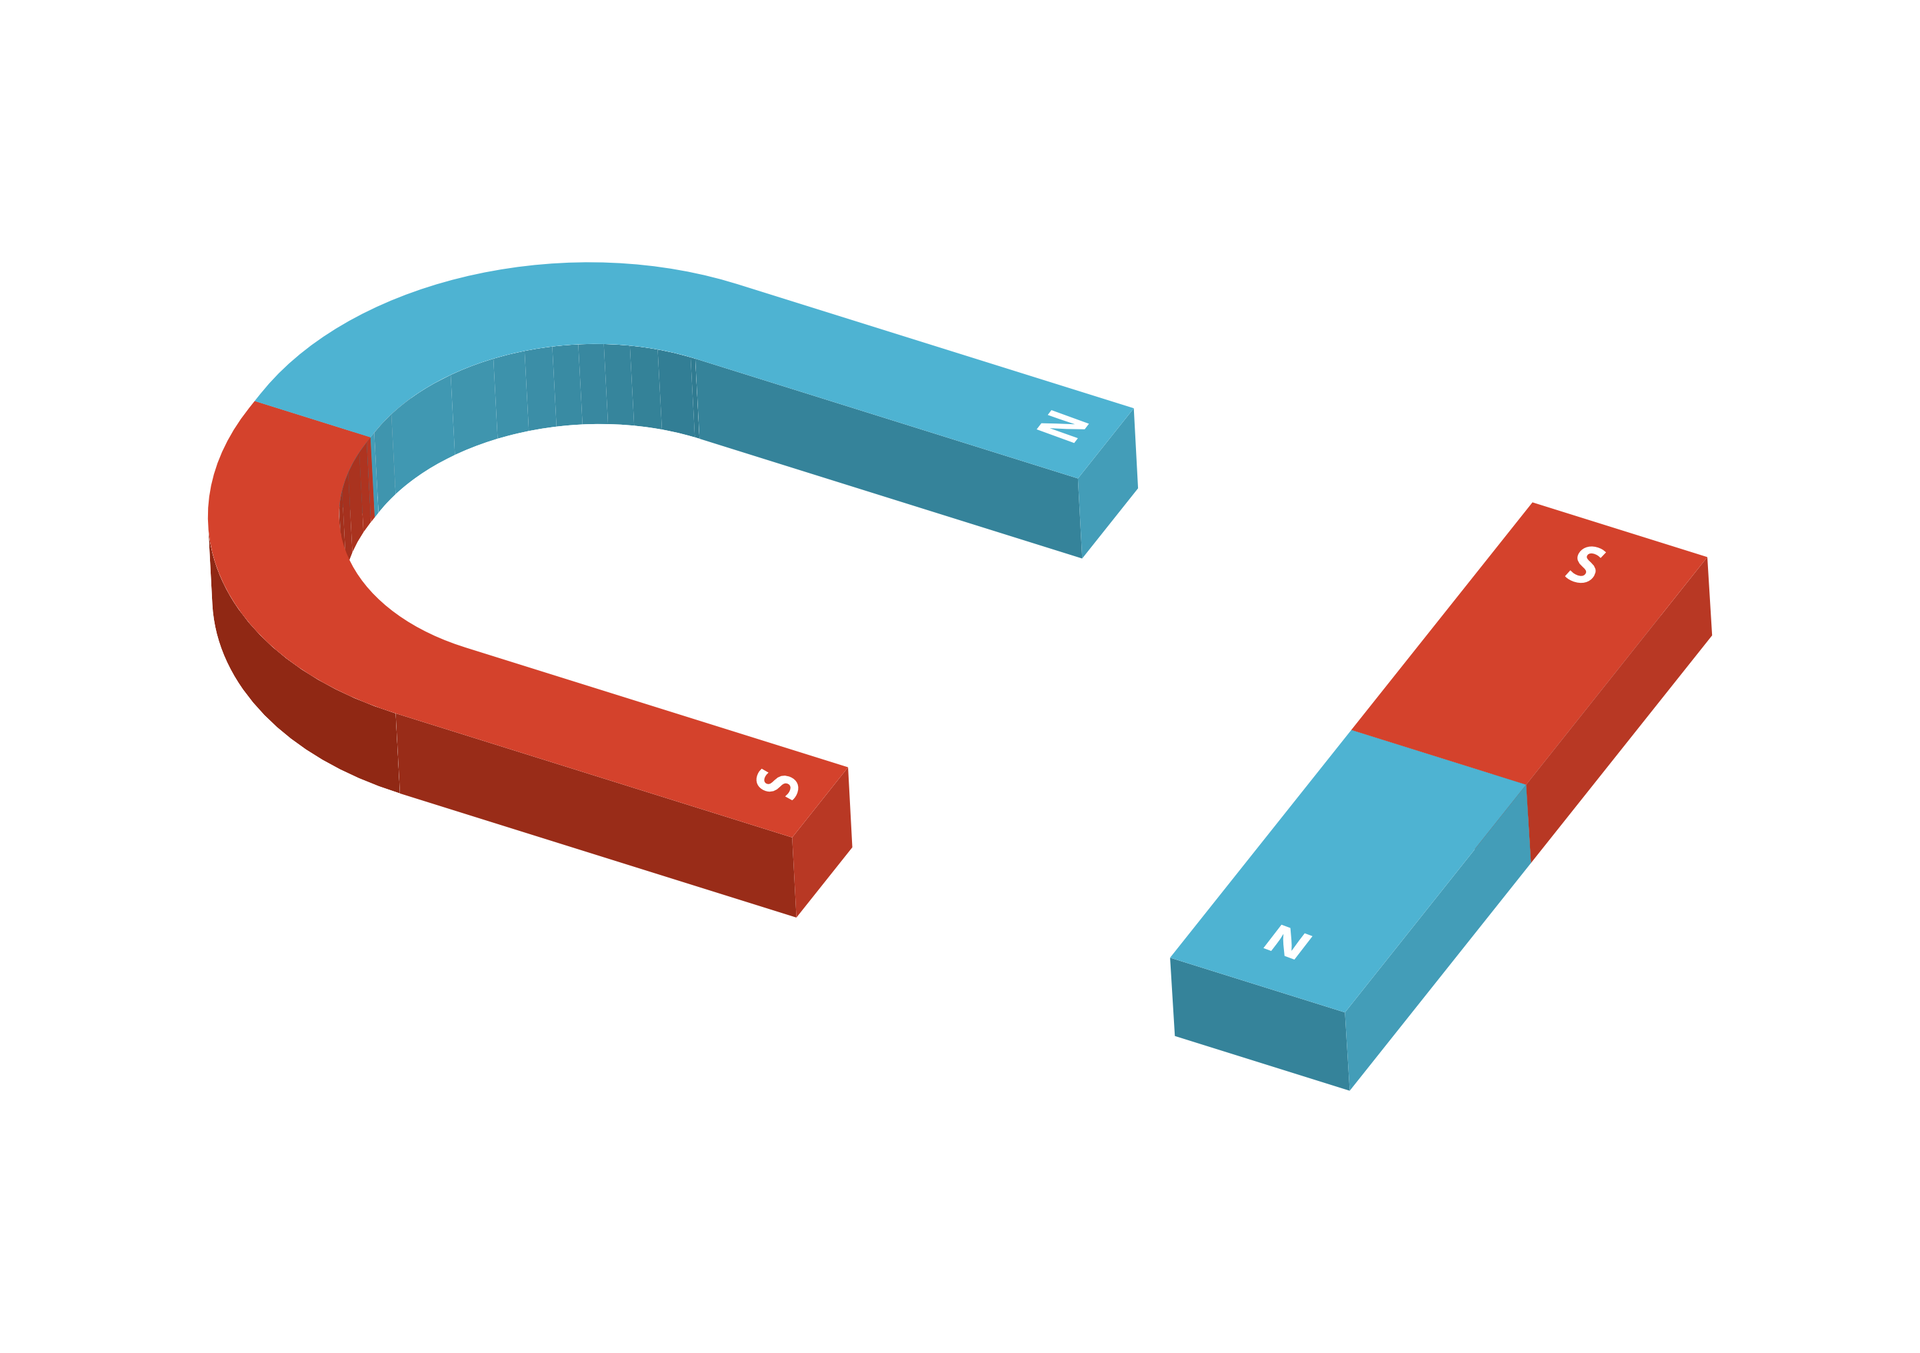 Ilustracja prezentuje dwa magnesy. Po lewej stronie znajduje się magnes w kształcie podkowy. Jego jedna połowa, oznaczona literą N, jest koloru niebieskiego. Druga, oznaczona literą S, jest czerwona. Po prawej stronie rysunku widać magnes prostokątny – sztabkowy. Jego połowa oznaczona literą N jest pomalowana na niebiesko, zaś ta oznaczona literą S jest czerwona.